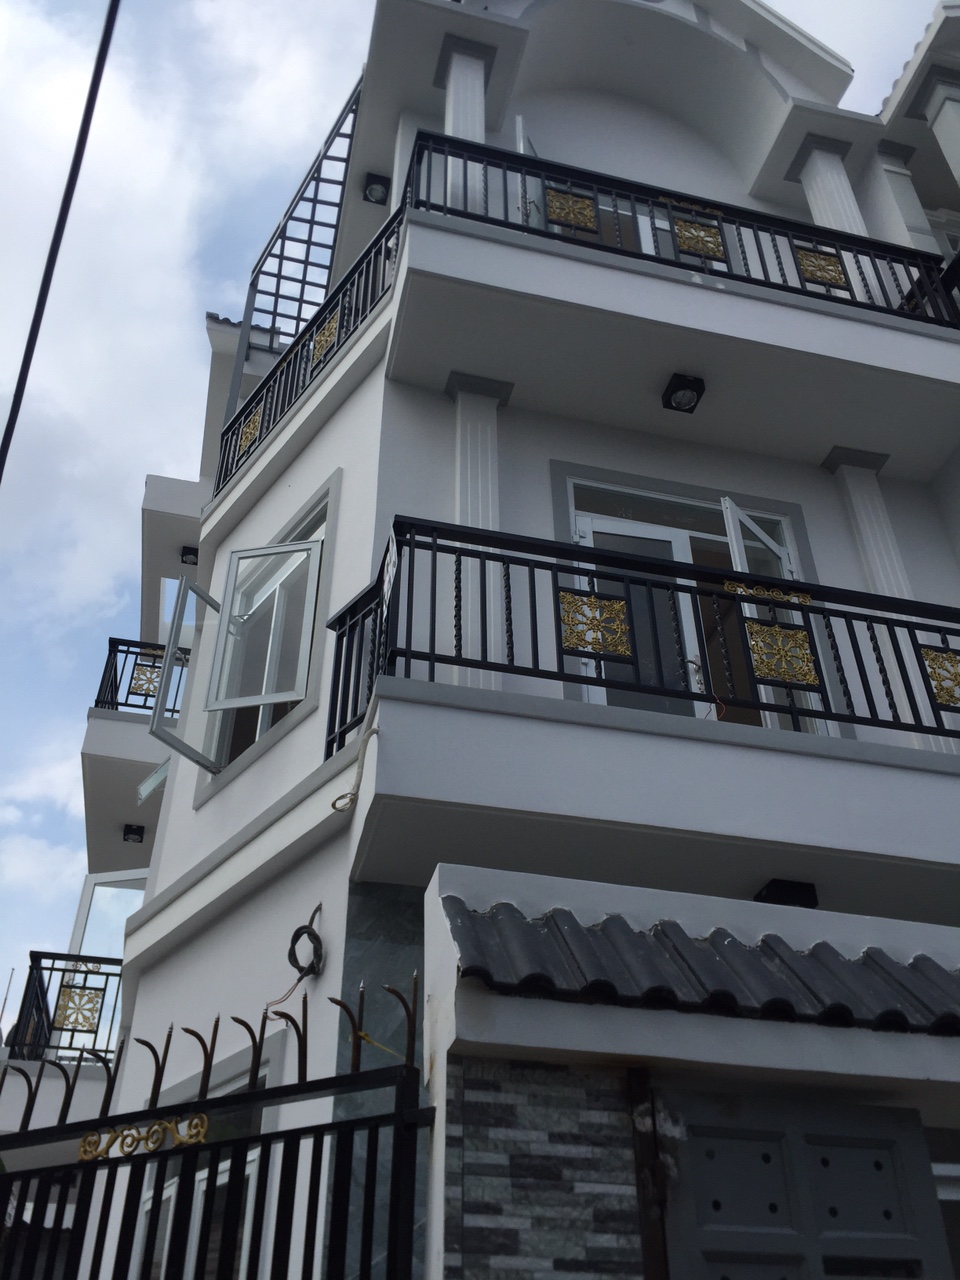 Bán gấp nhà đẹp 3 lầu lô góc 2 mặt tiền hẻm 935 Huỳnh Tấn Phát, Quận 7, DT 6x12m. Giá 4,48 tỷ